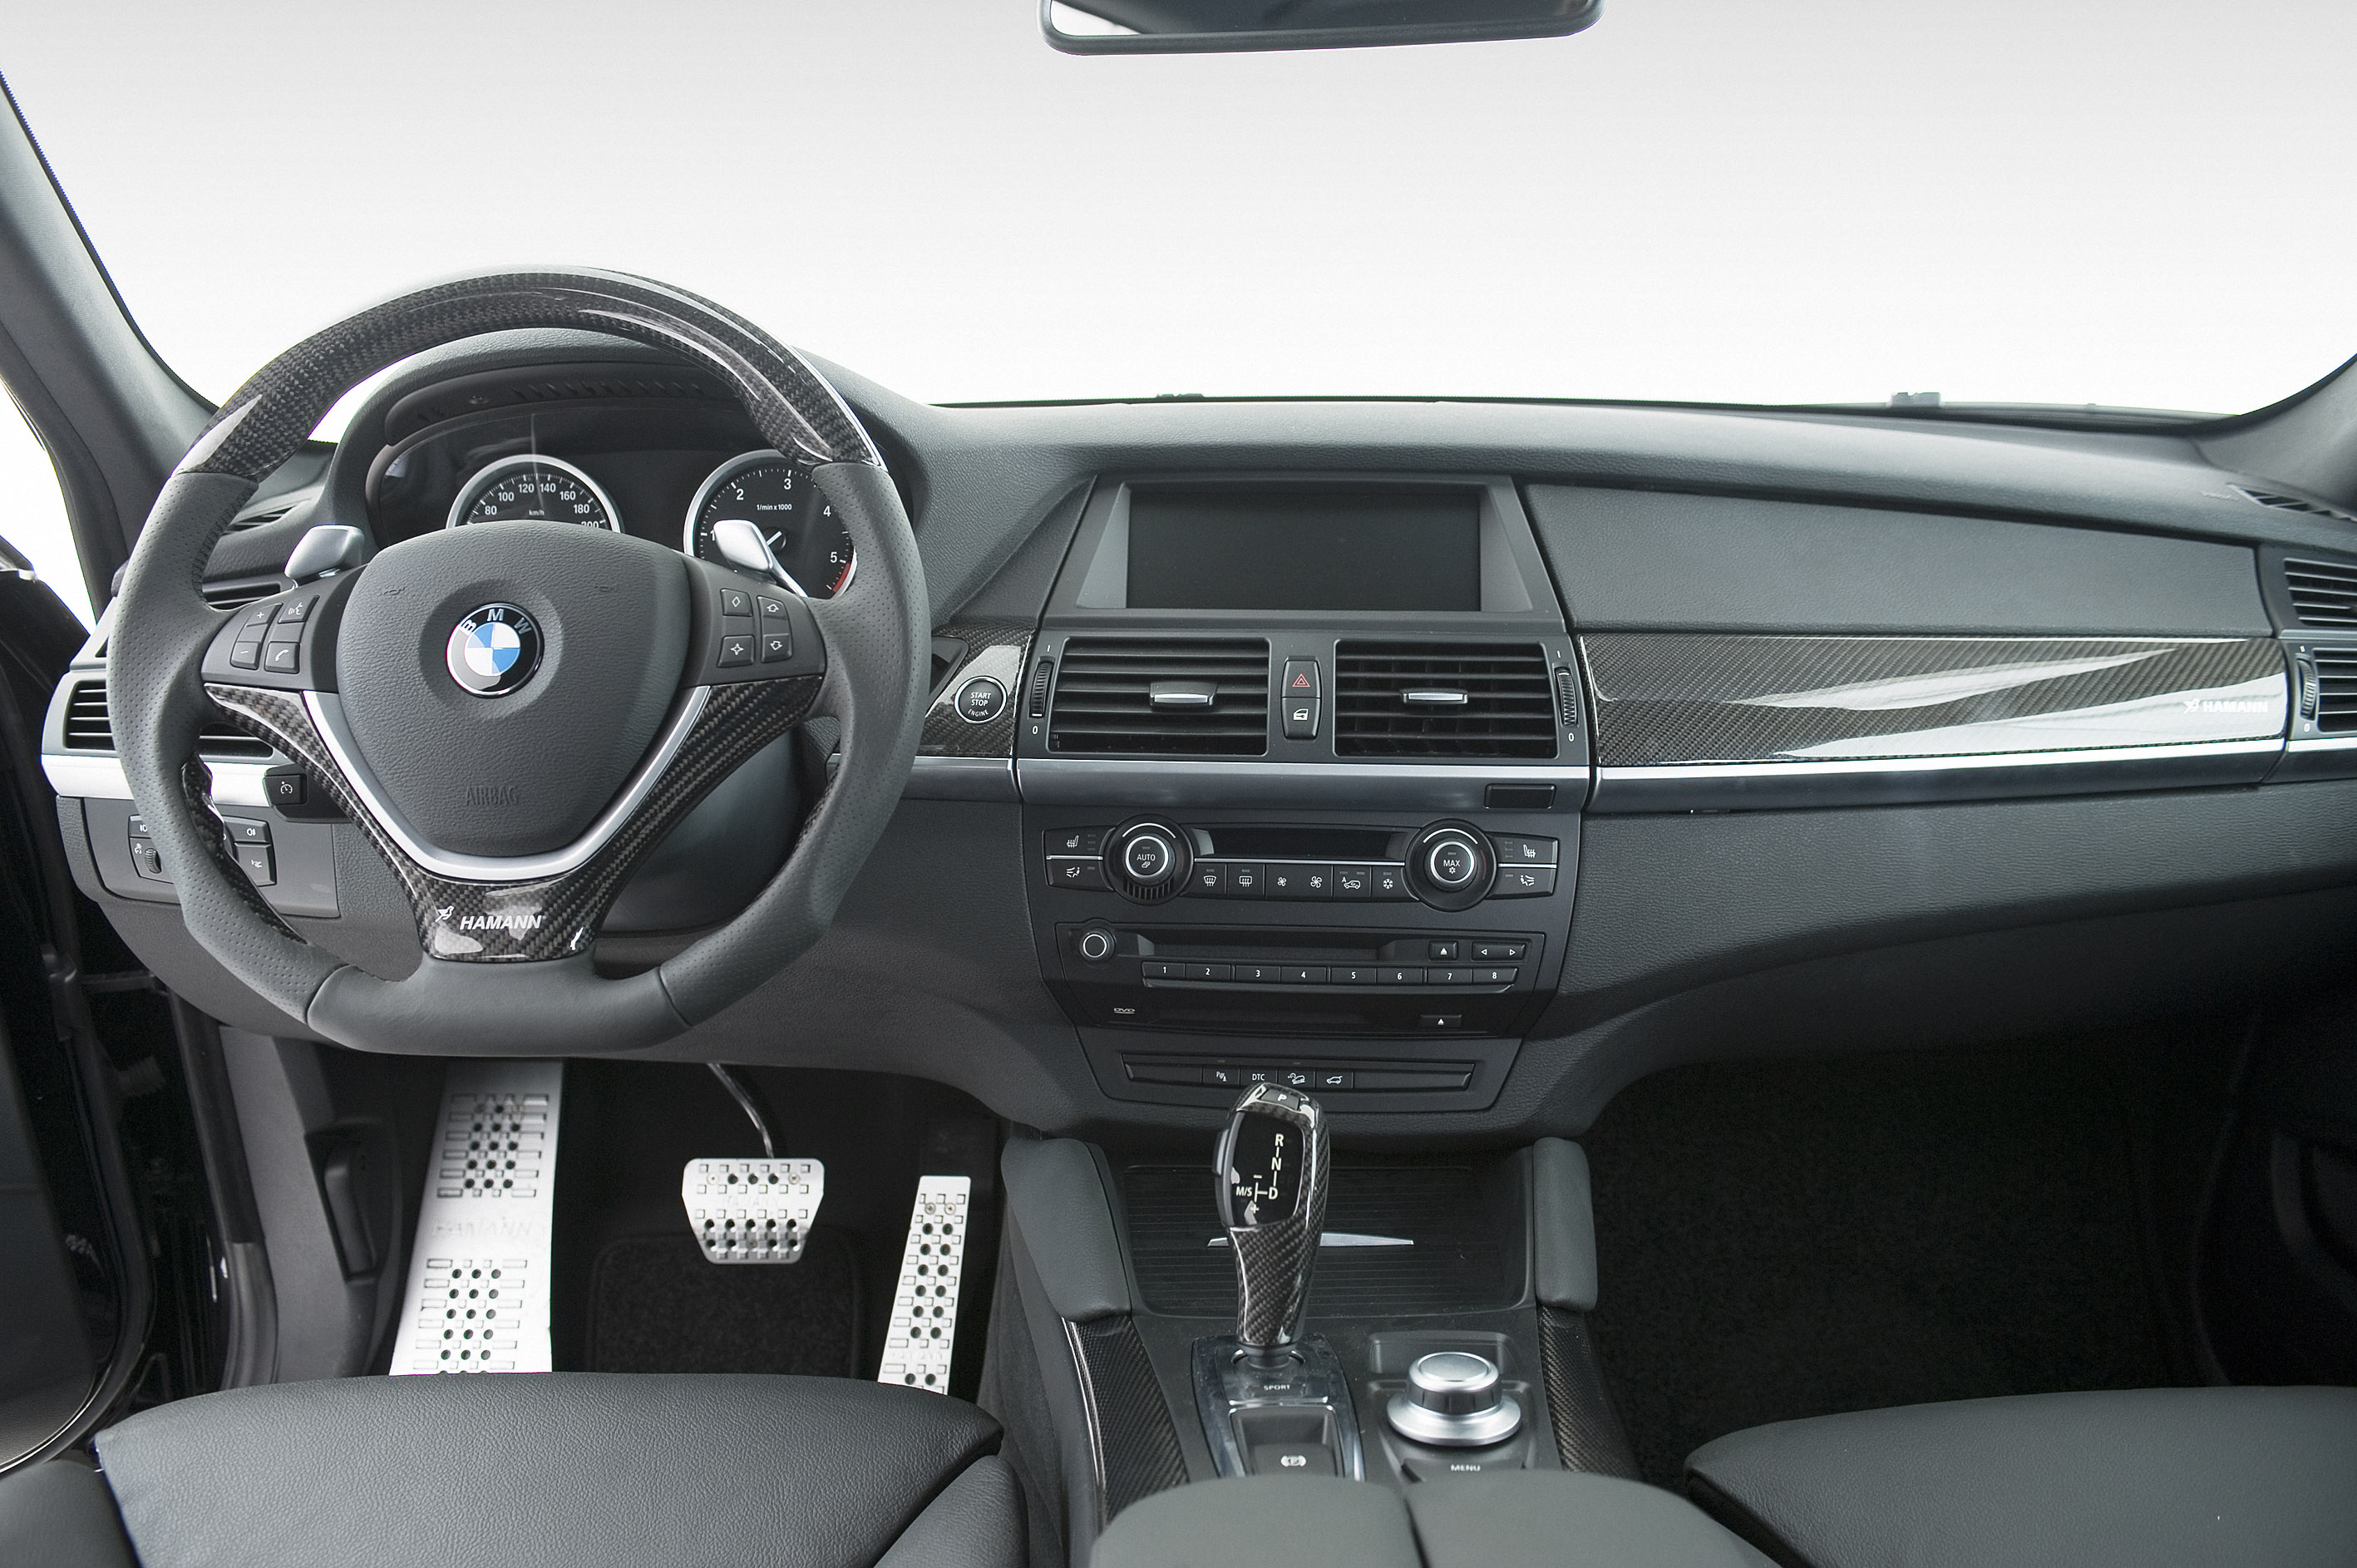 Торпедо бмв. BMW x6 2009 салон. BMW x6 e71 салон. BMW x6 2009 комплектации. БМВ х6 2012 салон.